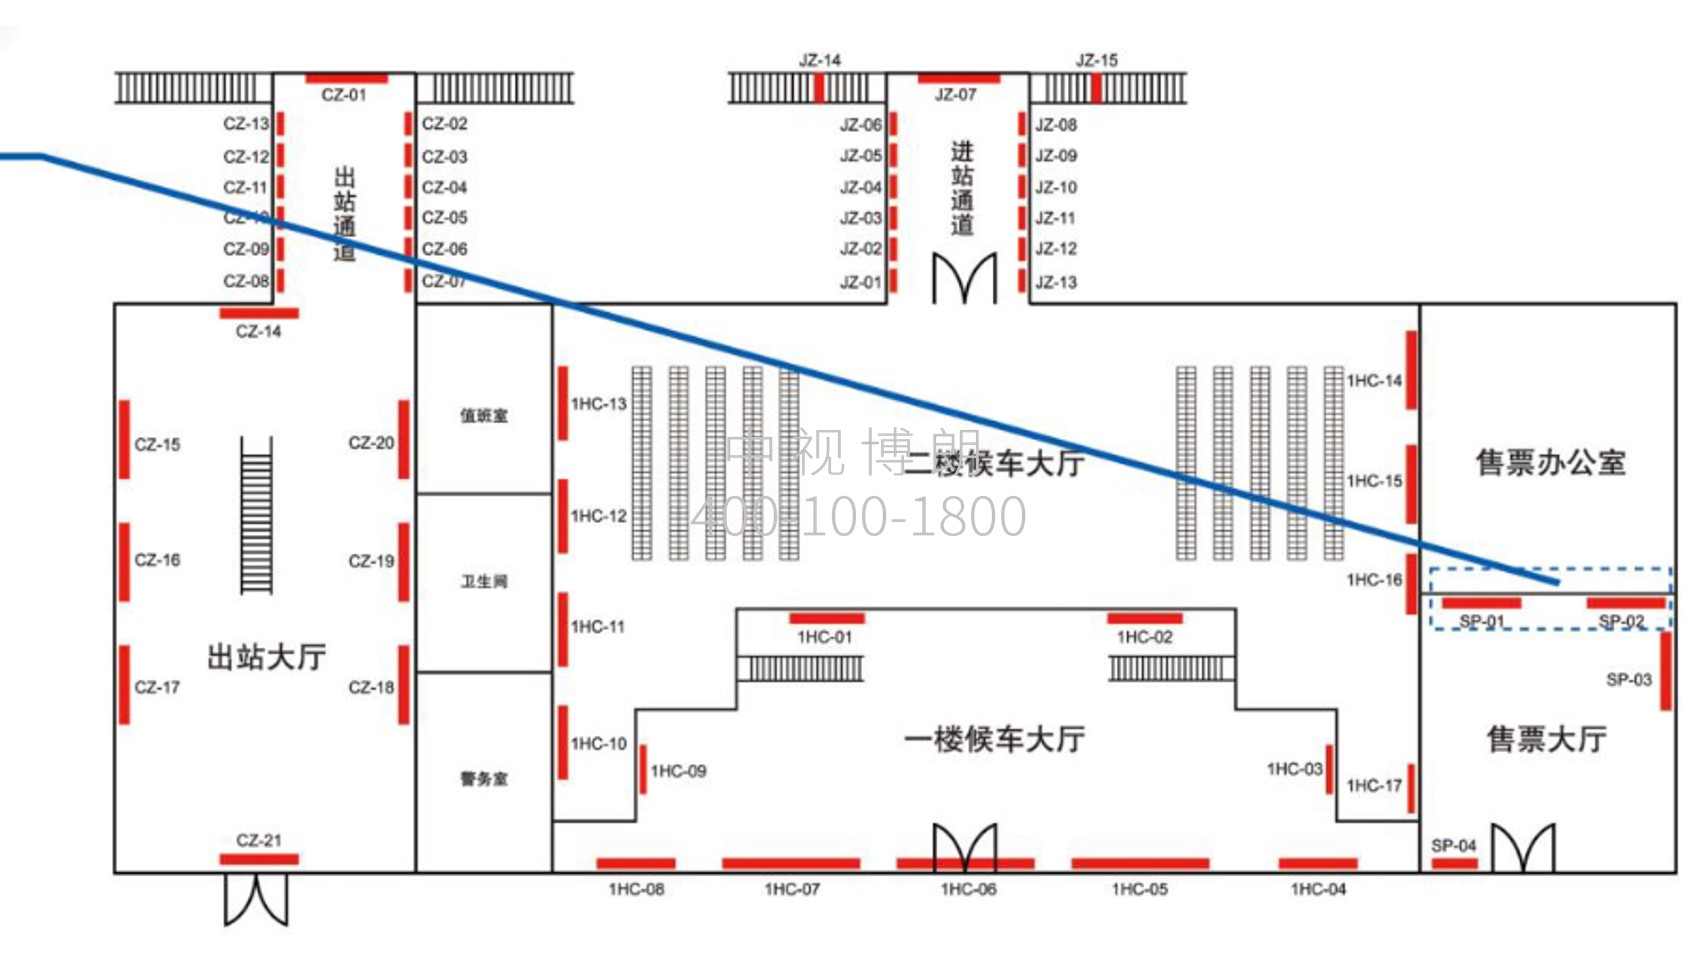 晋江站-售票厅上方灯箱点位图